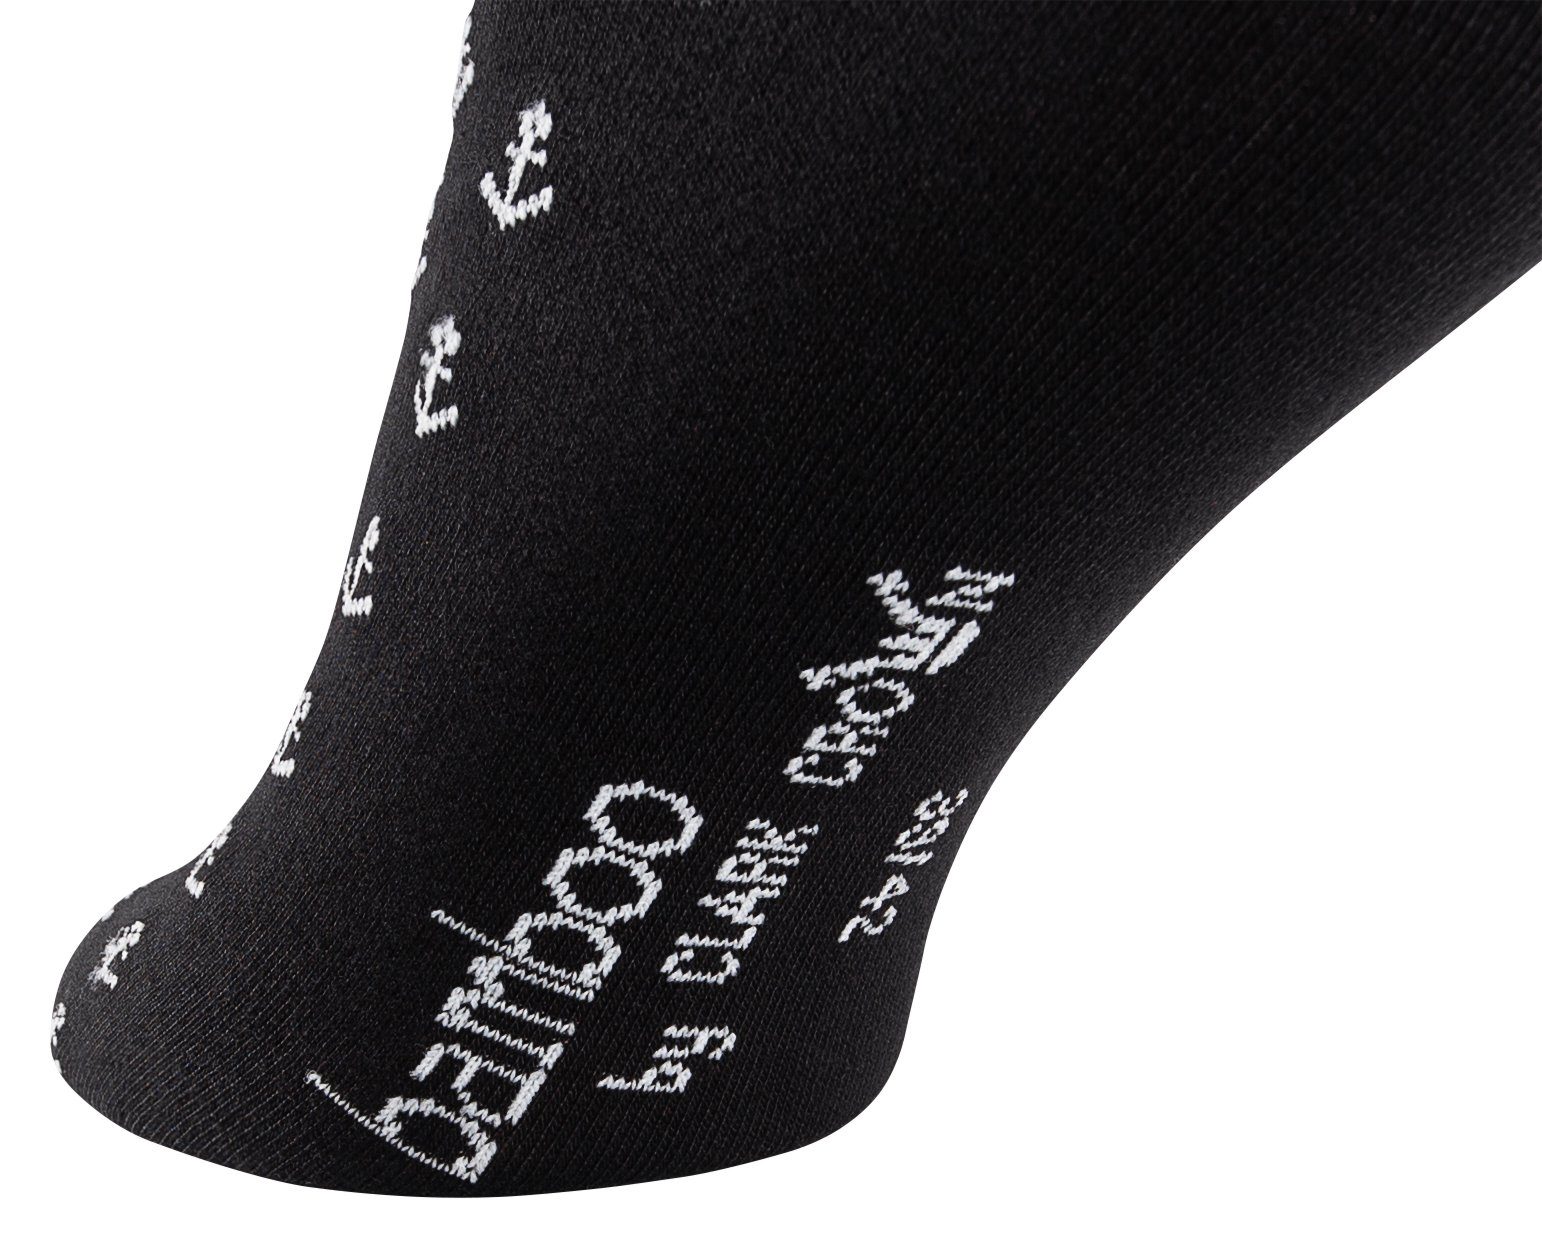 Viskose Clark und Crown® weich atmungsaktiv Socken (6-Paar) Ankerdesign durch